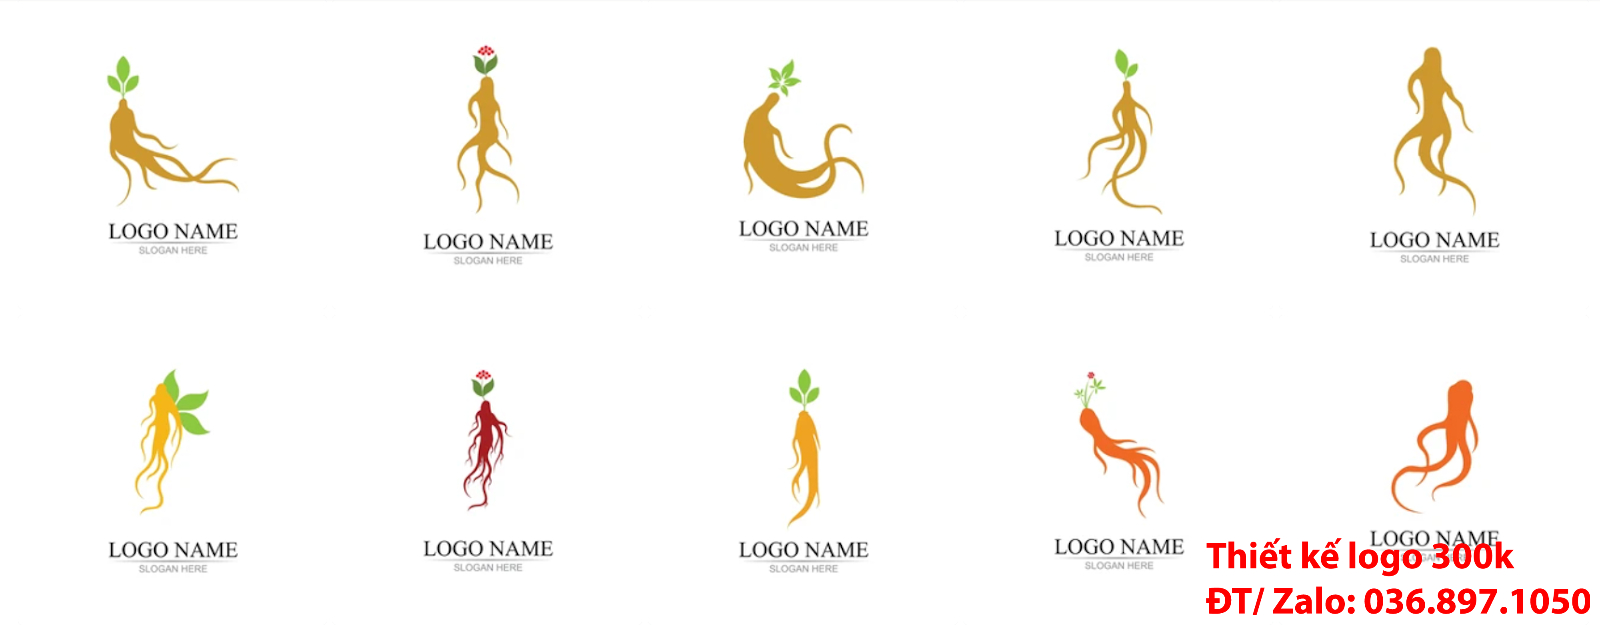 Dịch vụ Thiết kế logo nhân sâm chuyên nghiệp online tại Hà Nội uy tín giá rẻ